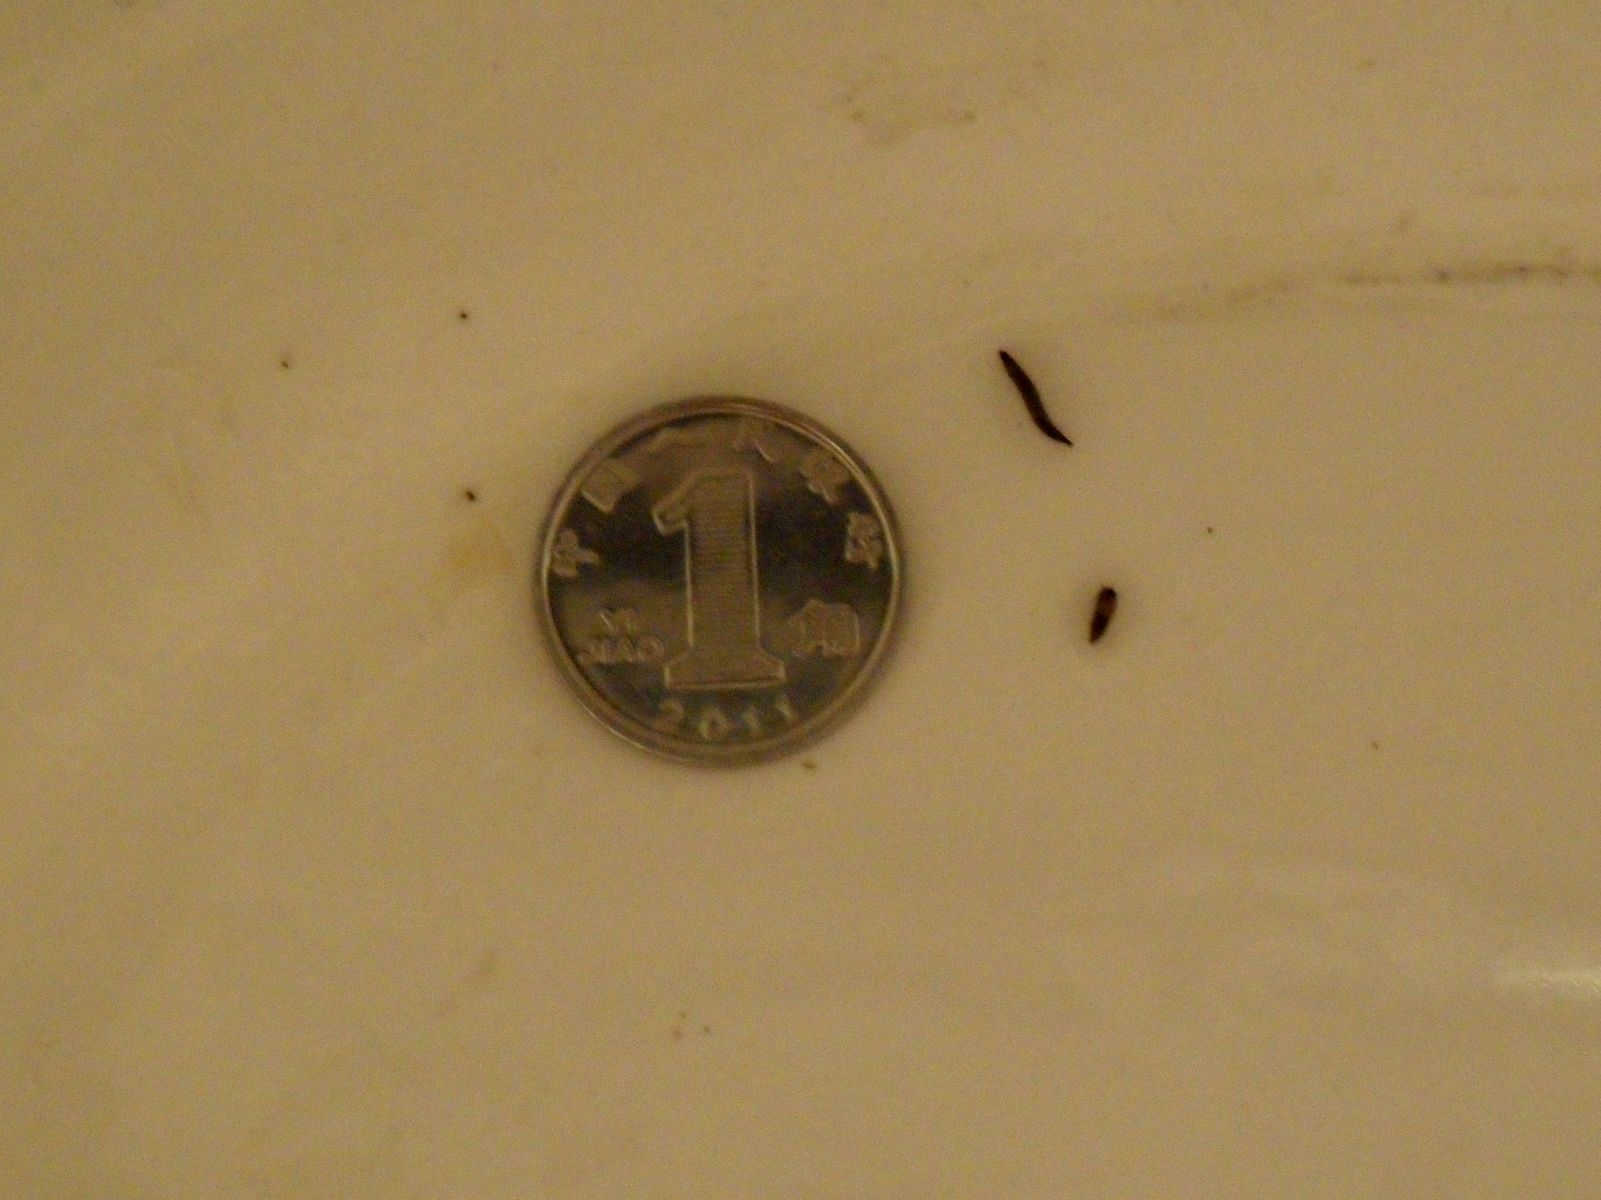 卫生间里出现了黑色条状小虫，这是什么虫，如何治理？_百度知道